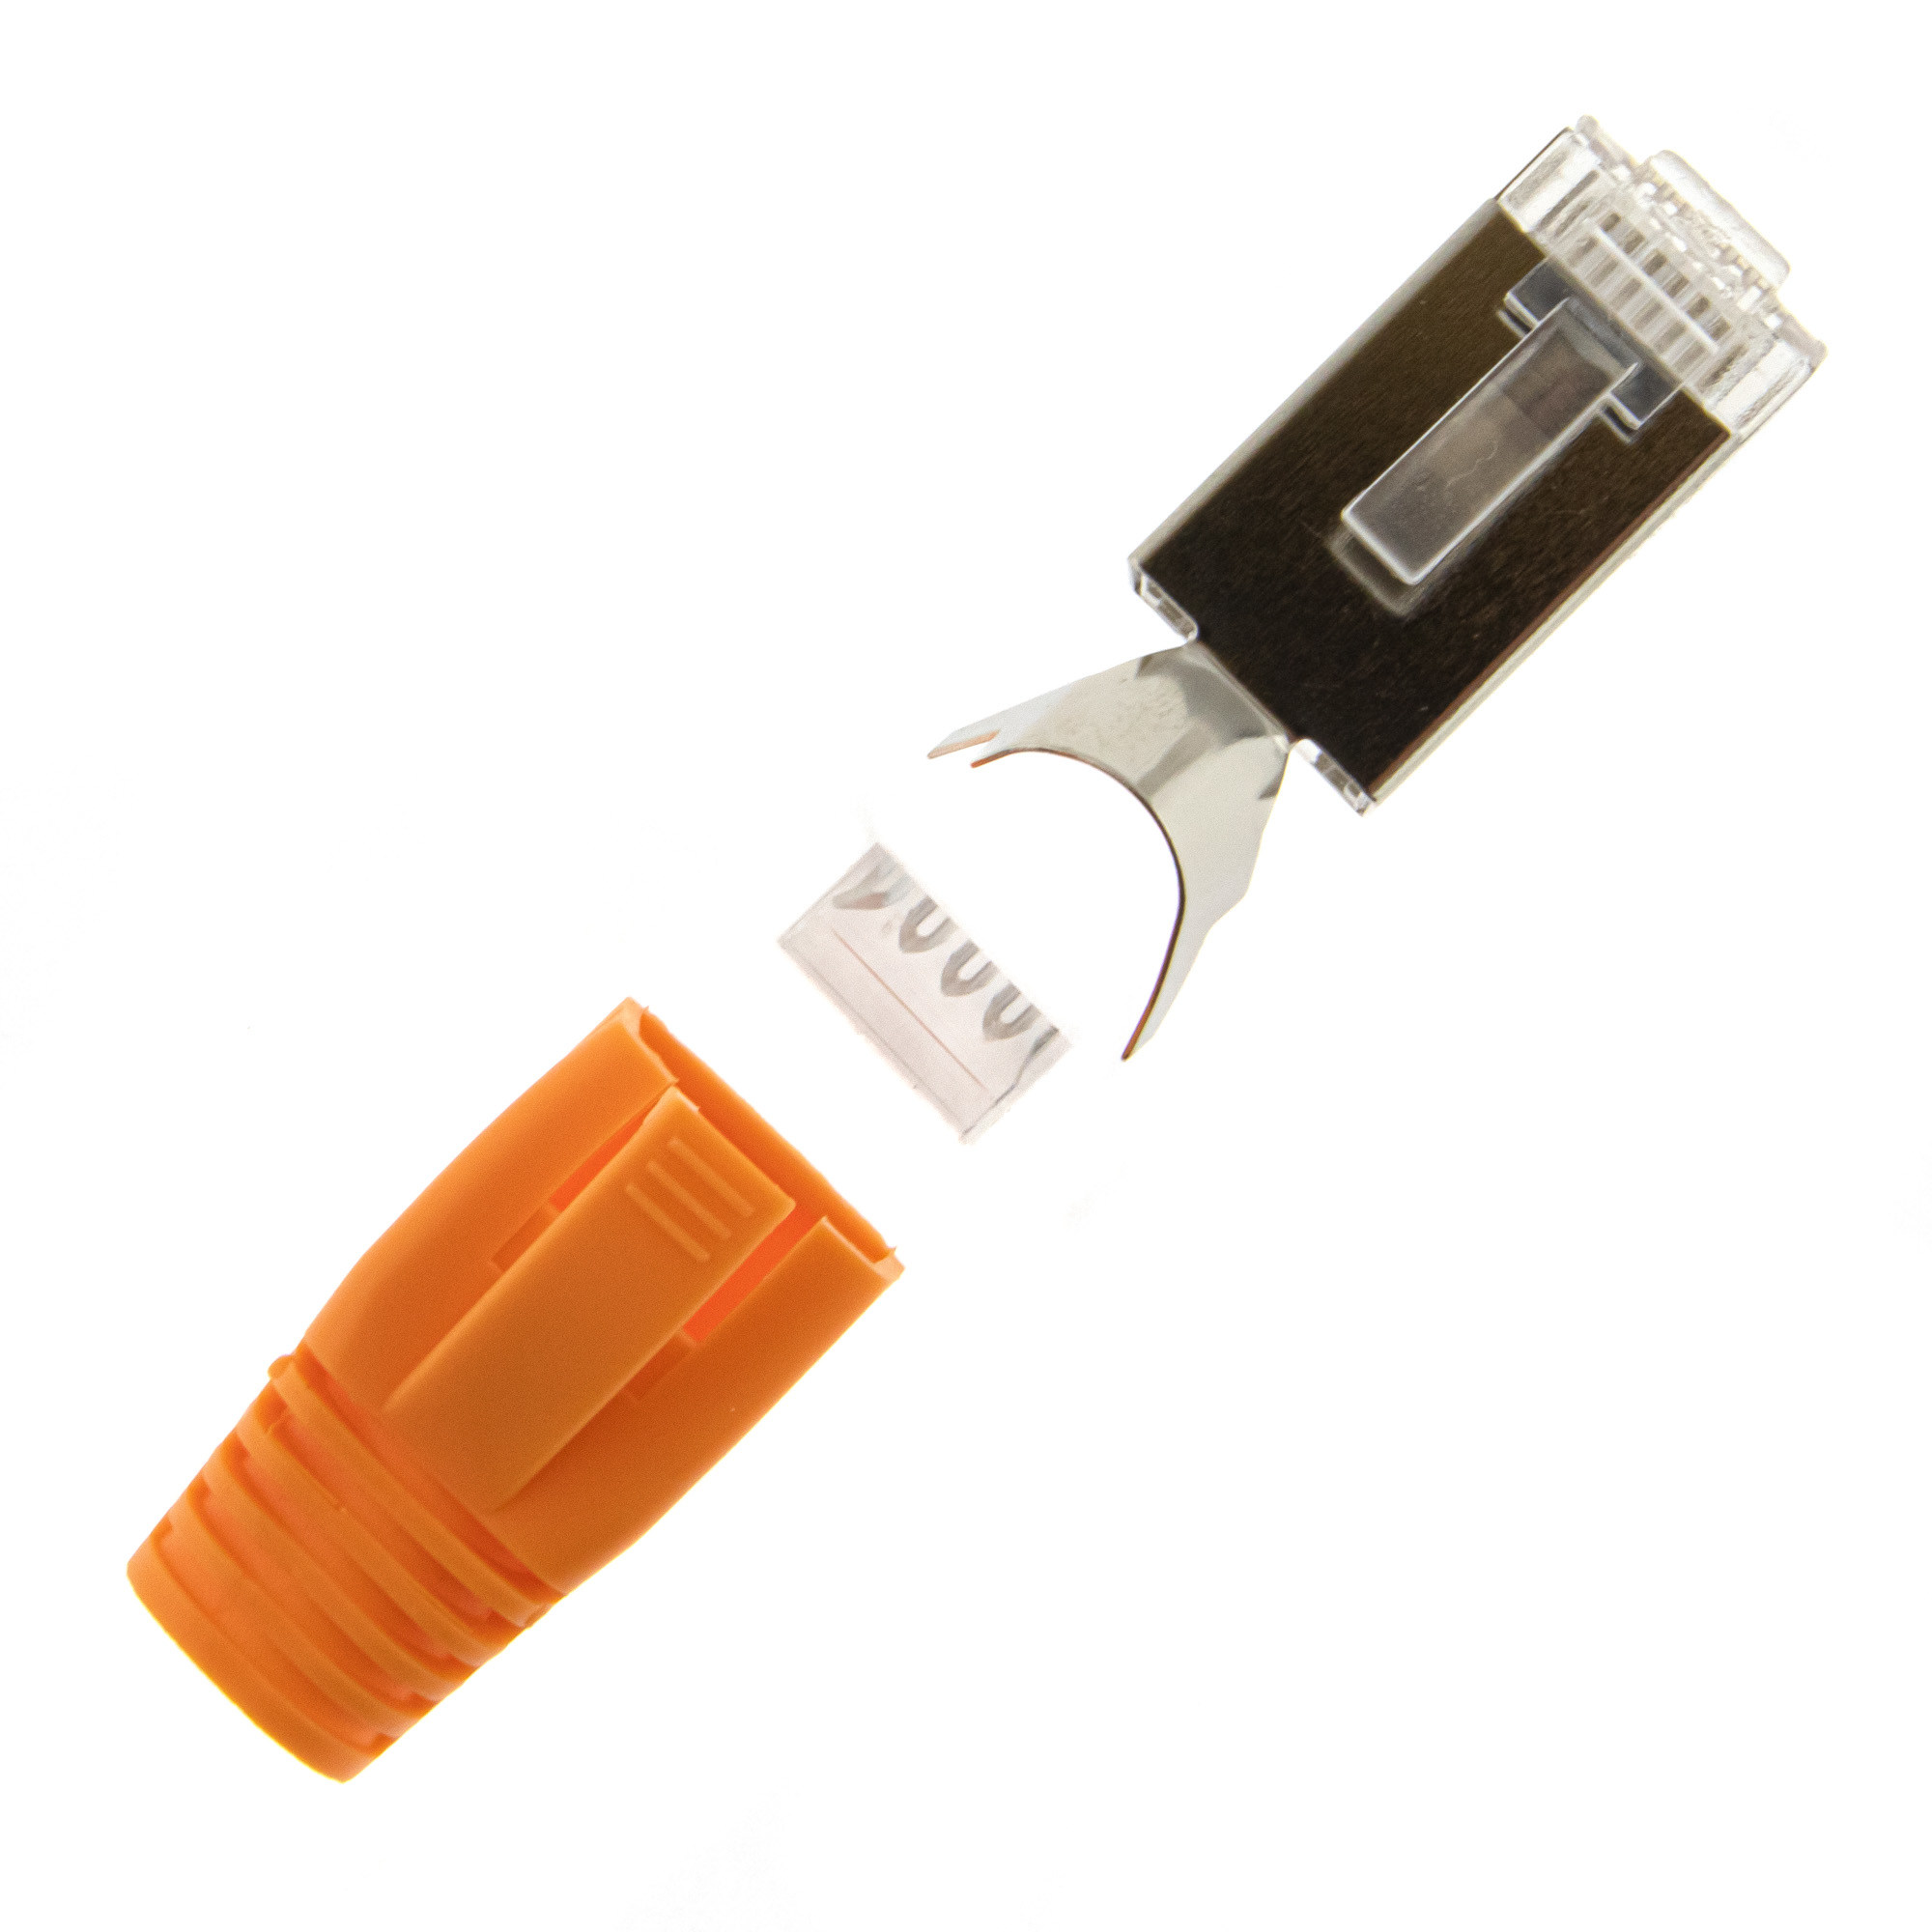 RJ45 connector + insertion aid + plug cap 10PCS - orange